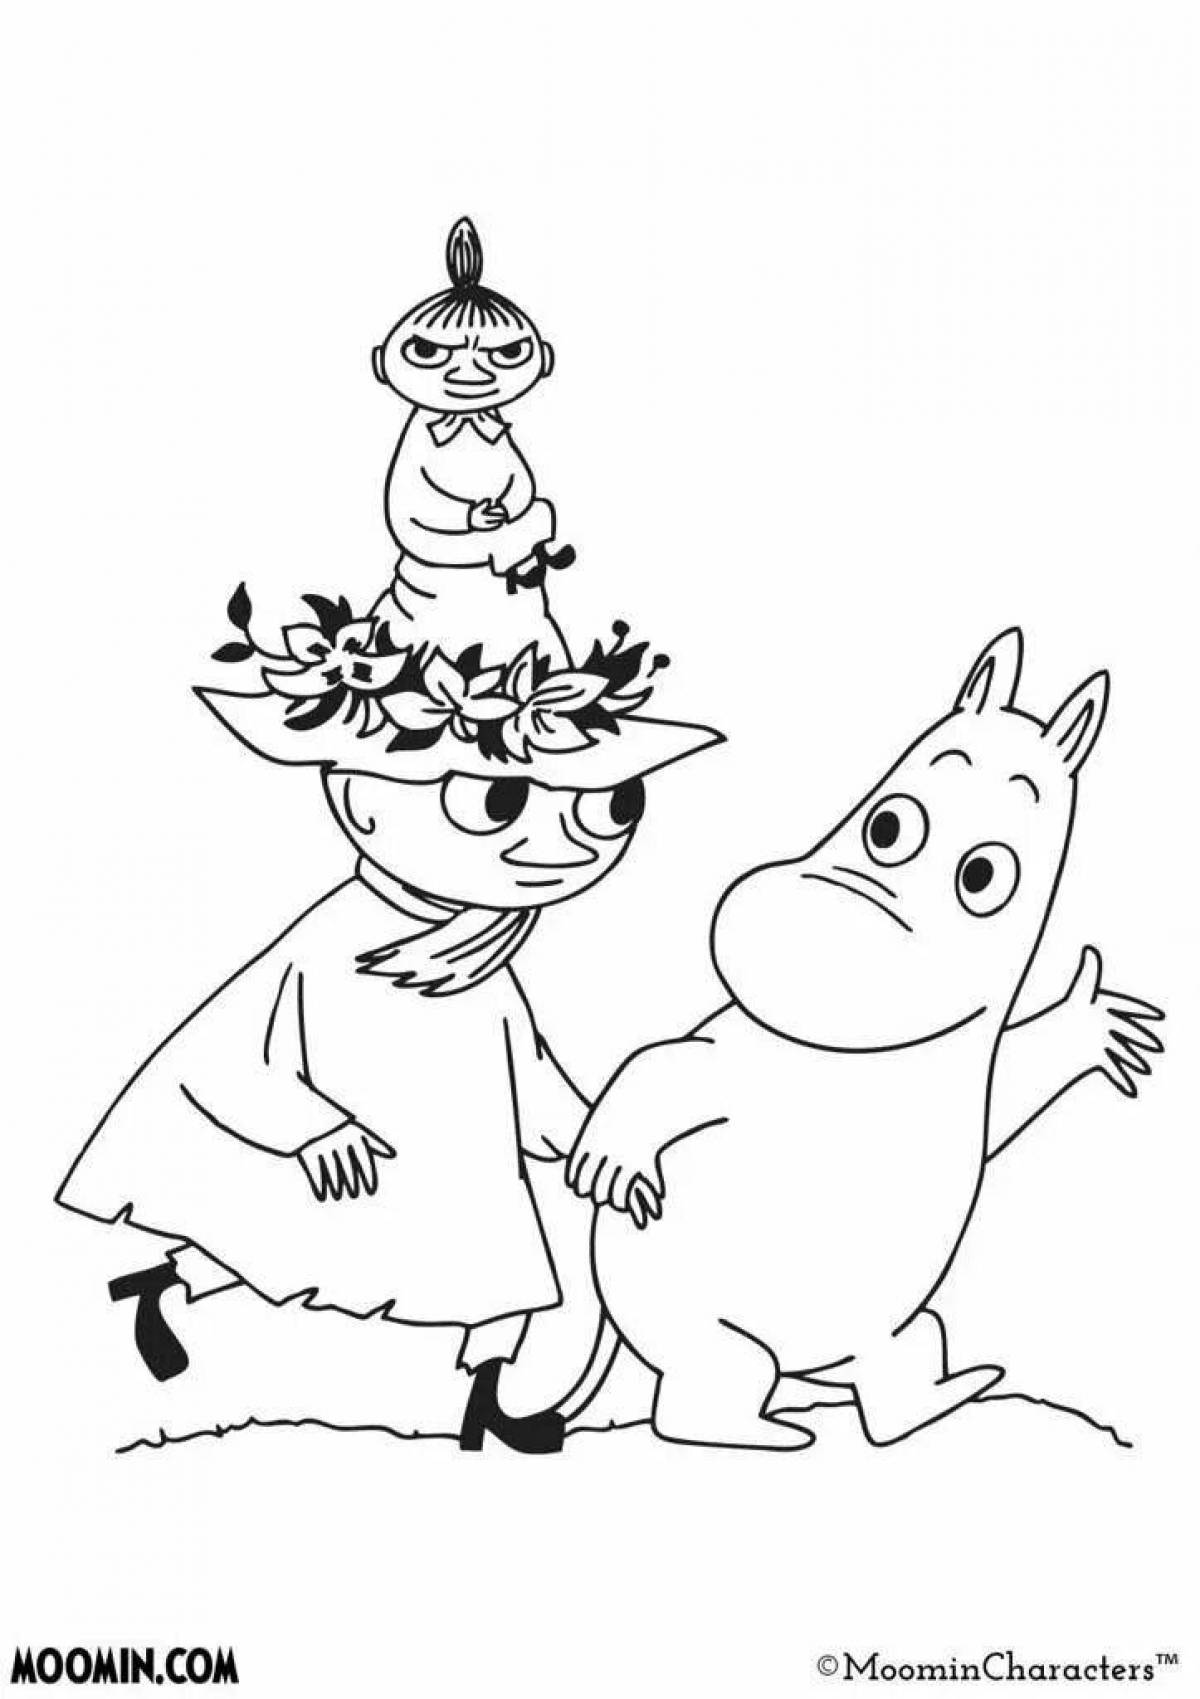 Coloring book humorous Moomin trolls